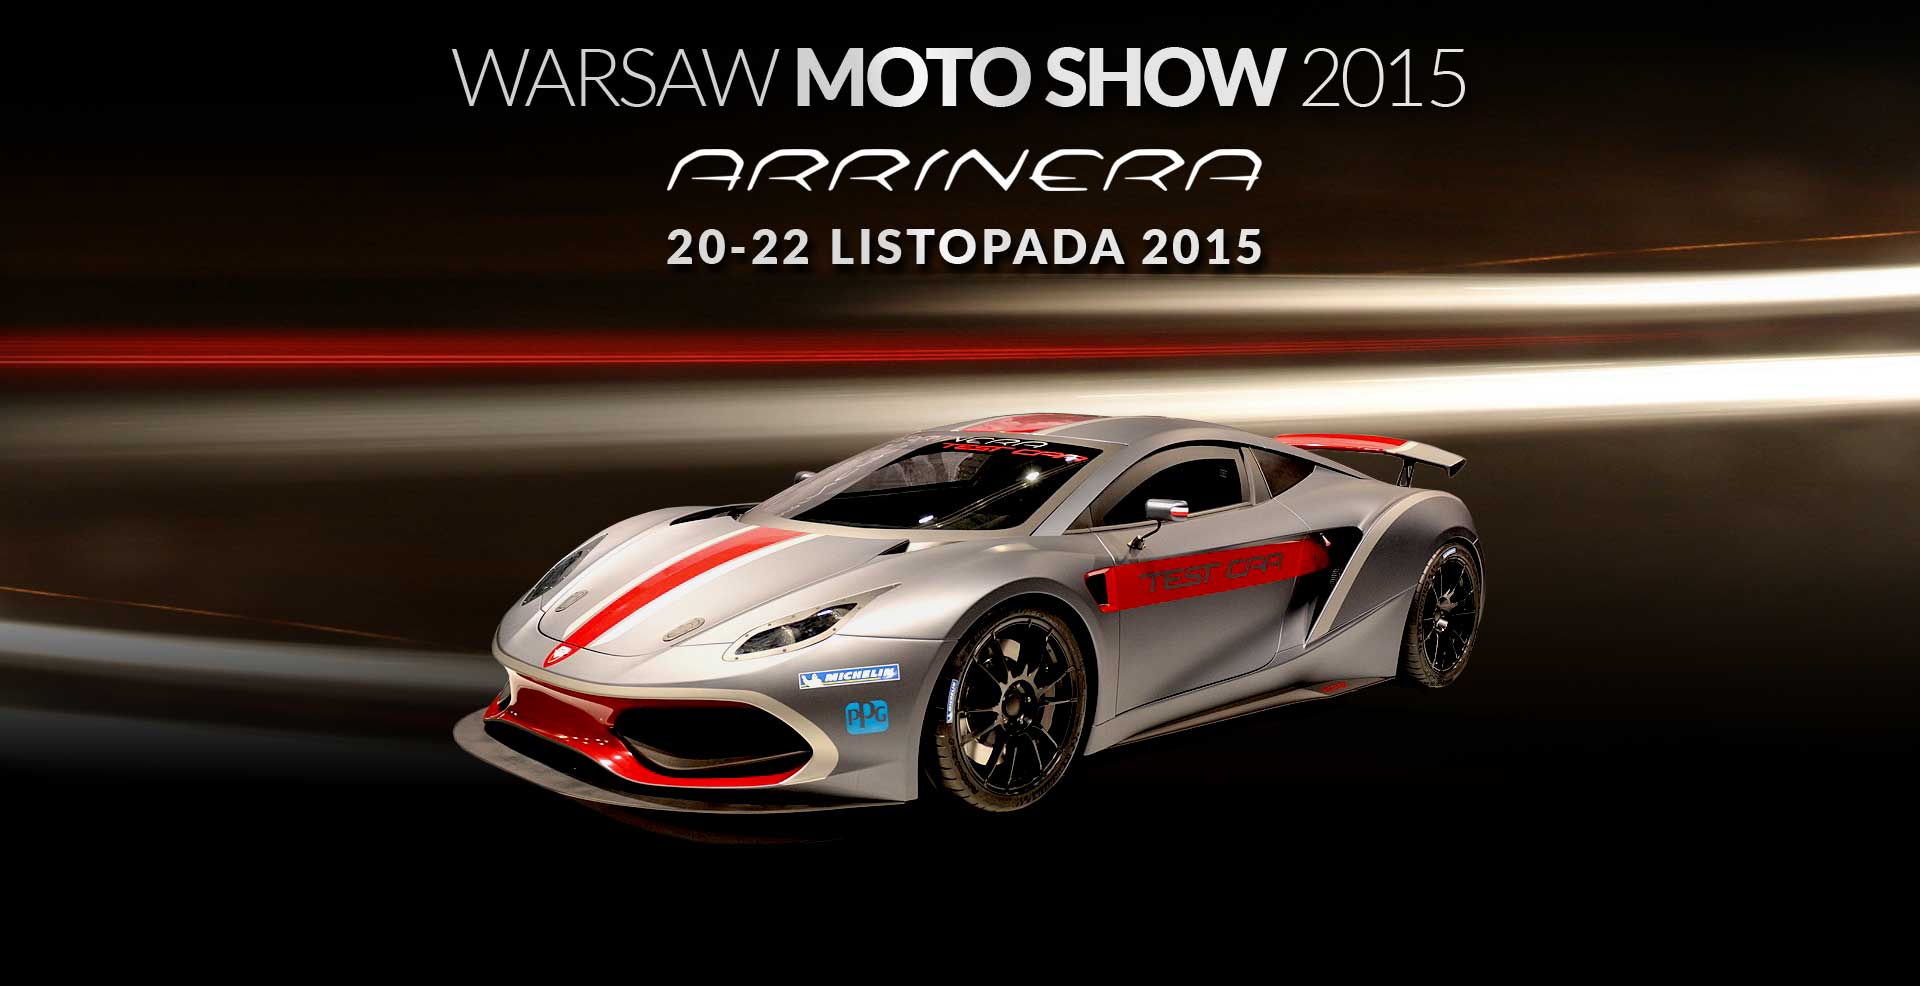 Pierwszy polski supersamochód Arrinera Hussarya na Warsaw Moto Show 2015